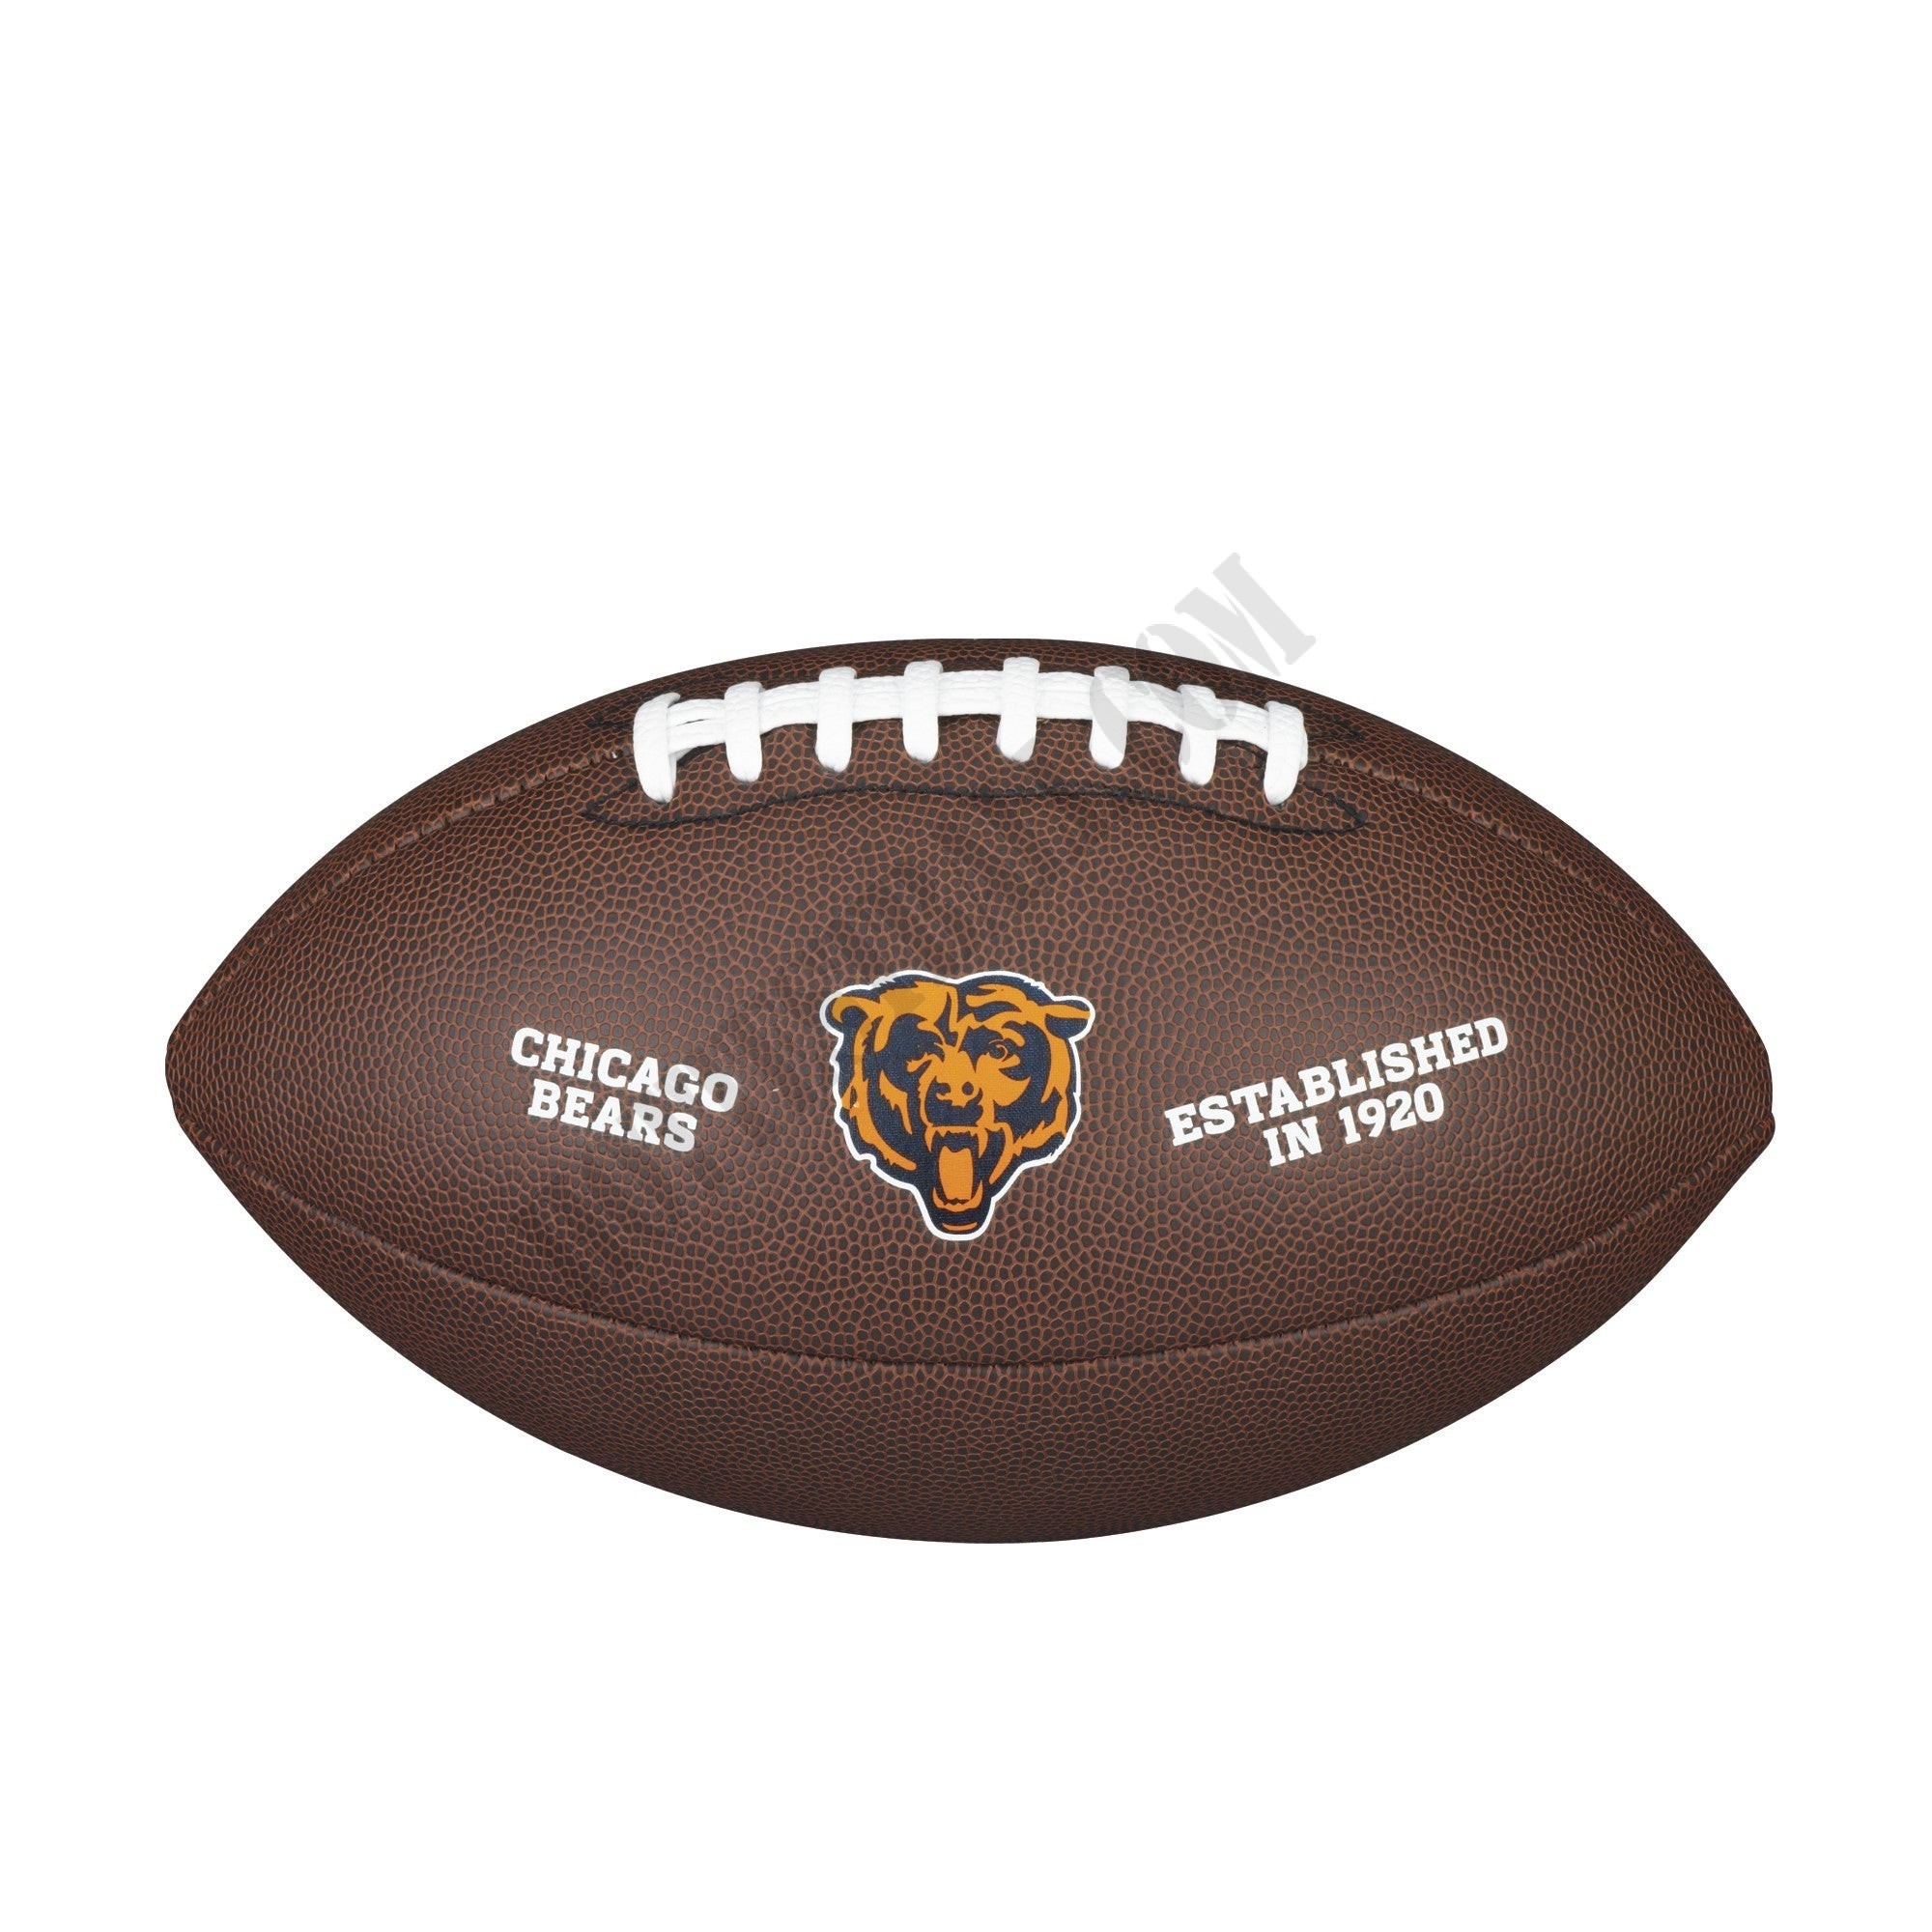 NFL Backyard Legend Football - Chicago Bears ● Wilson Promotions - NFL Backyard Legend Football - Chicago Bears ● Wilson Promotions